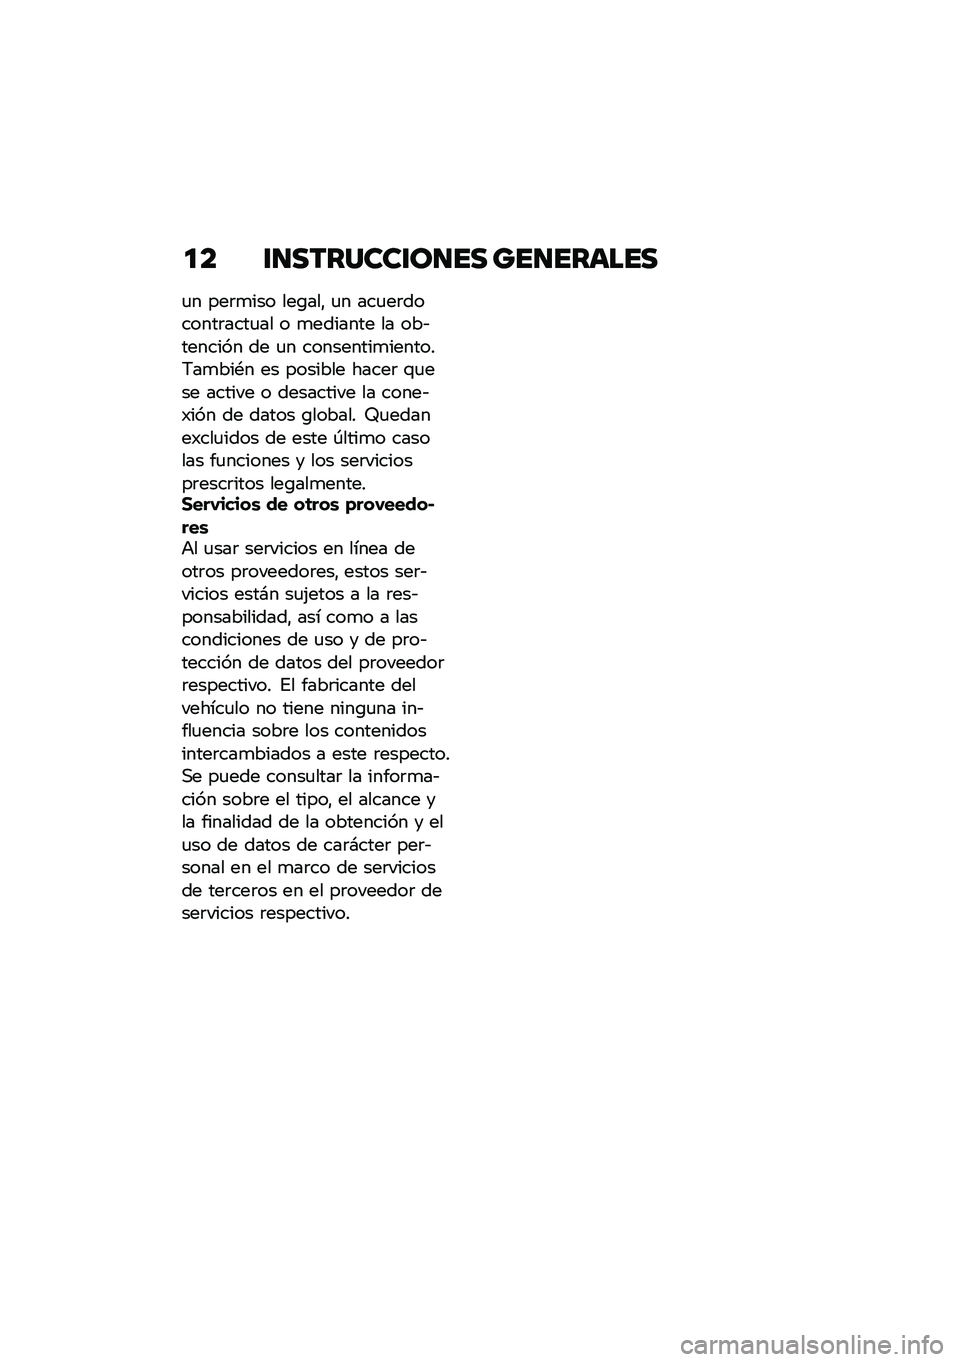 BMW MOTORRAD M 1000 RR 2021  Manual de instrucciones (in Spanish) �
� �\f�
�������\f��
�� ���
������
�
� ���	�
��� ���\b���" �
� ���
��	�������	����
�� � �
������� �� ���&������� �� �
� ��������